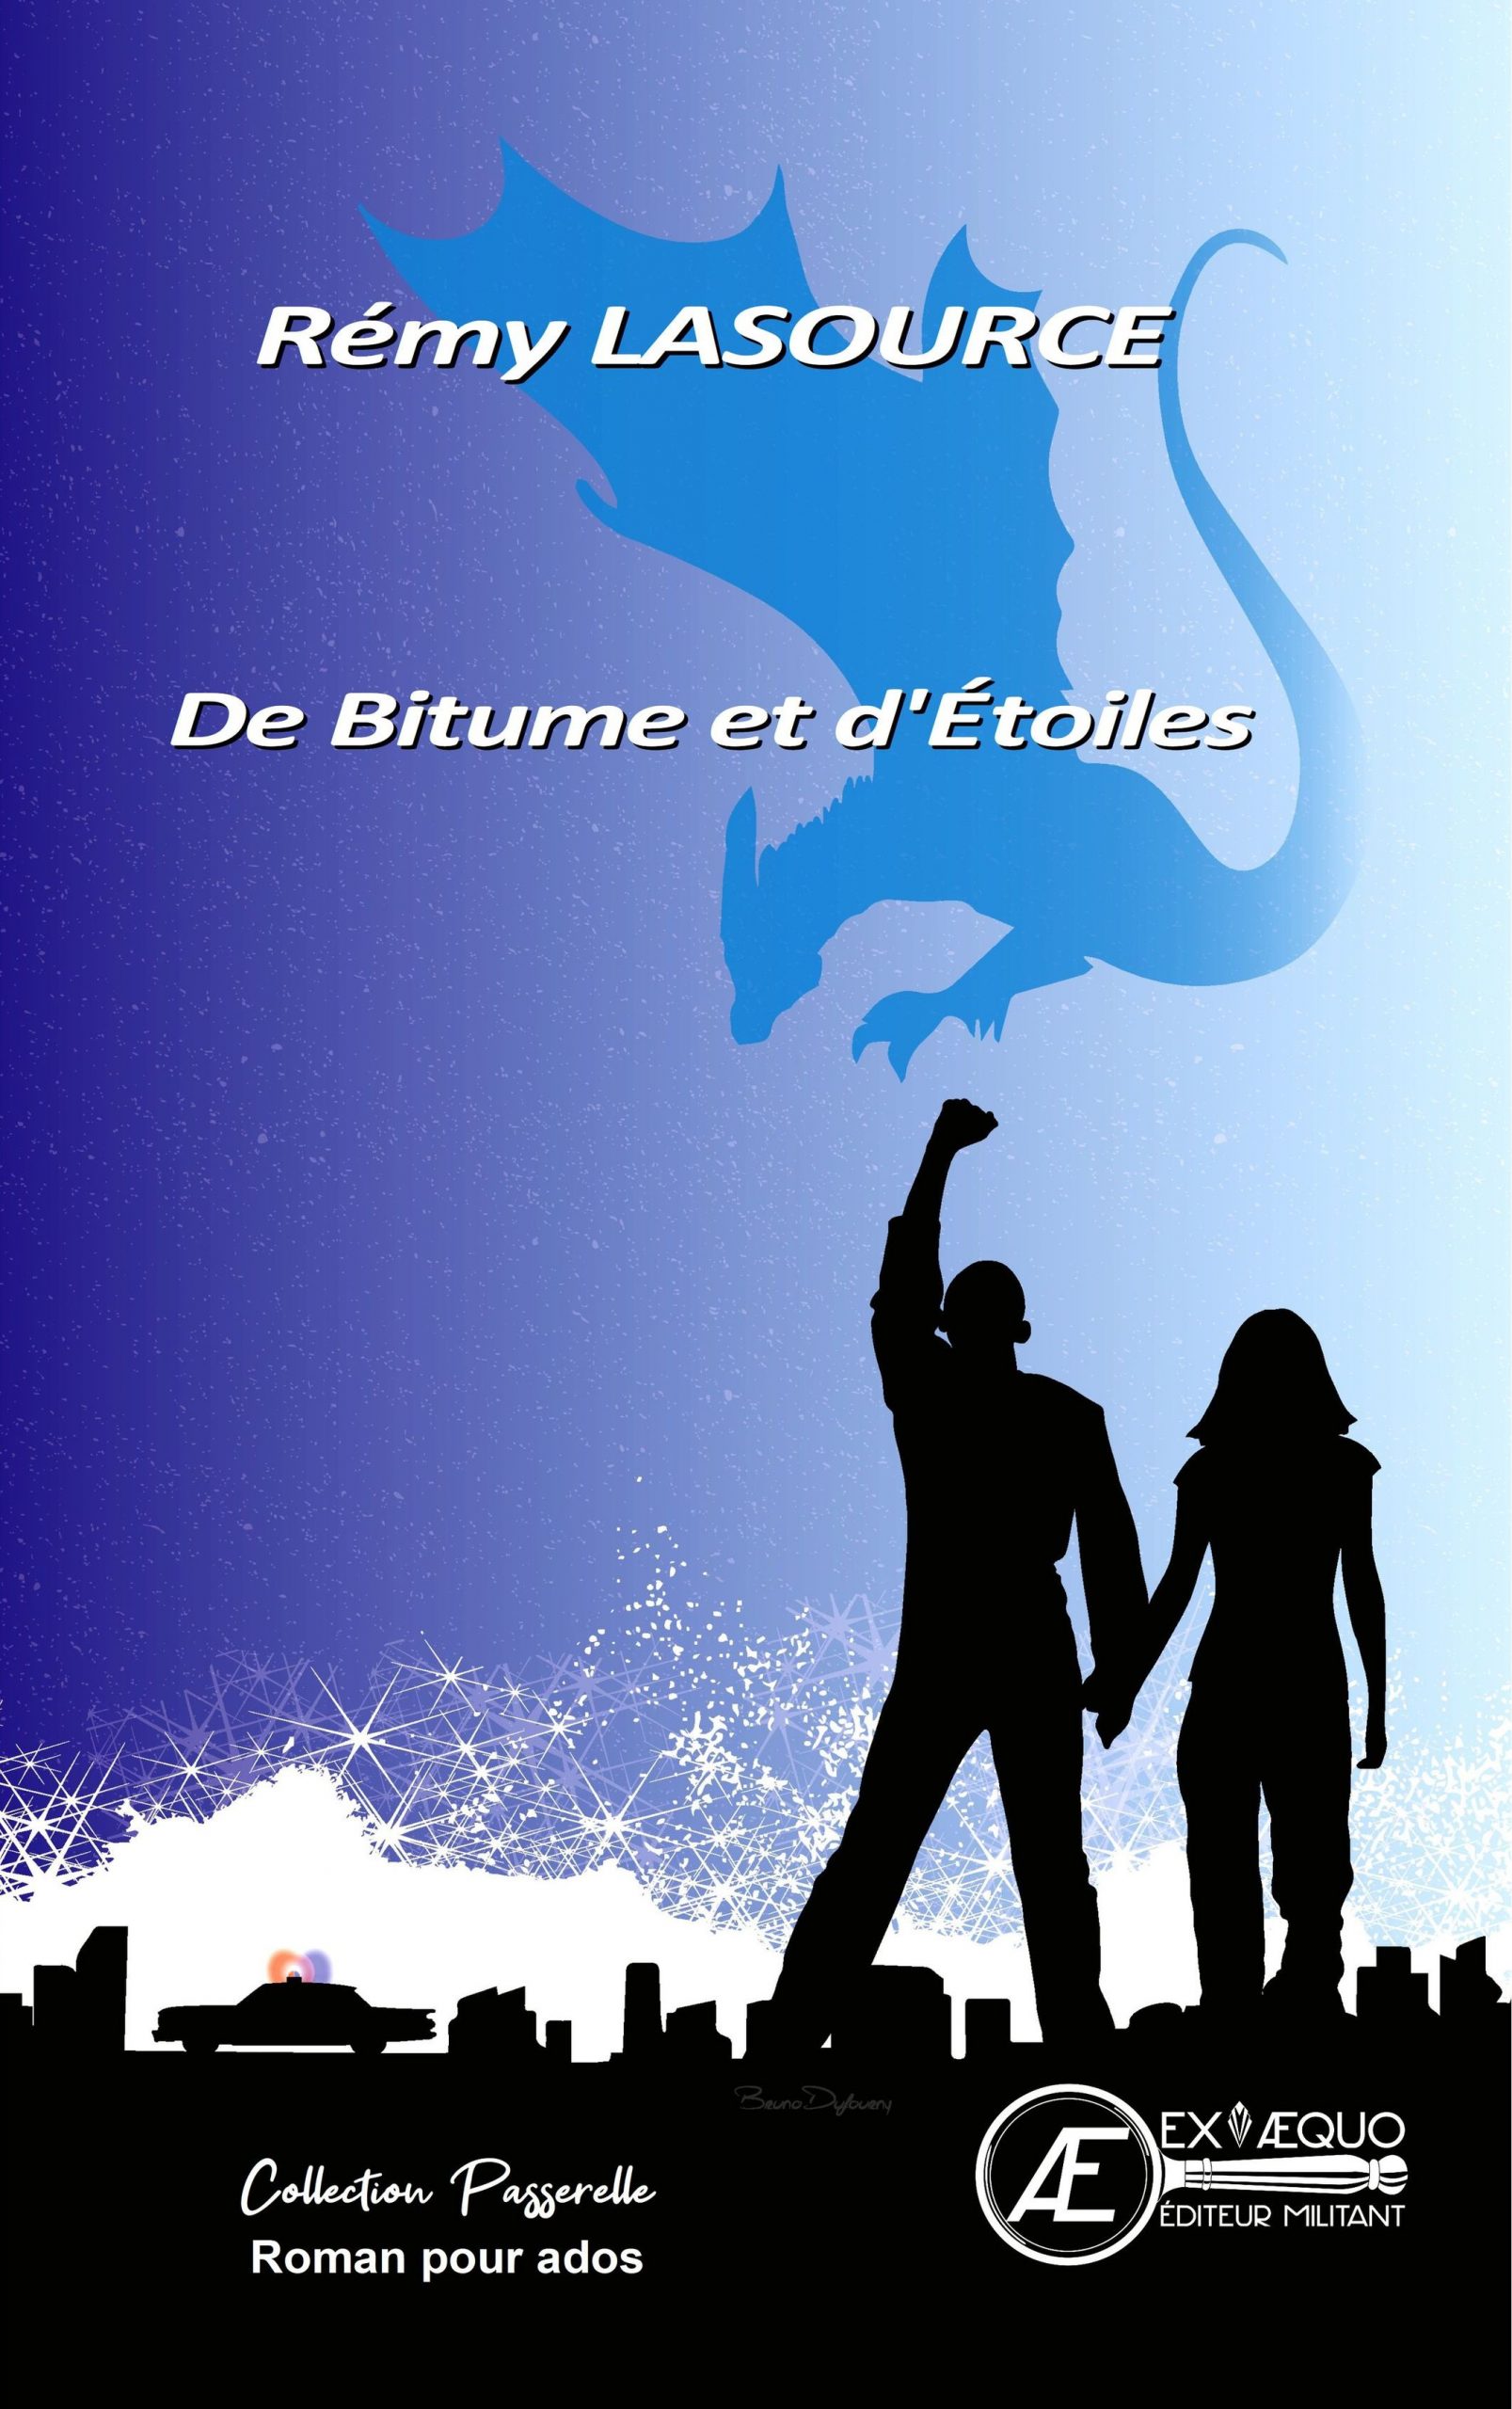 You are currently viewing De bitume et d’étoiles, de Rémy Lasource